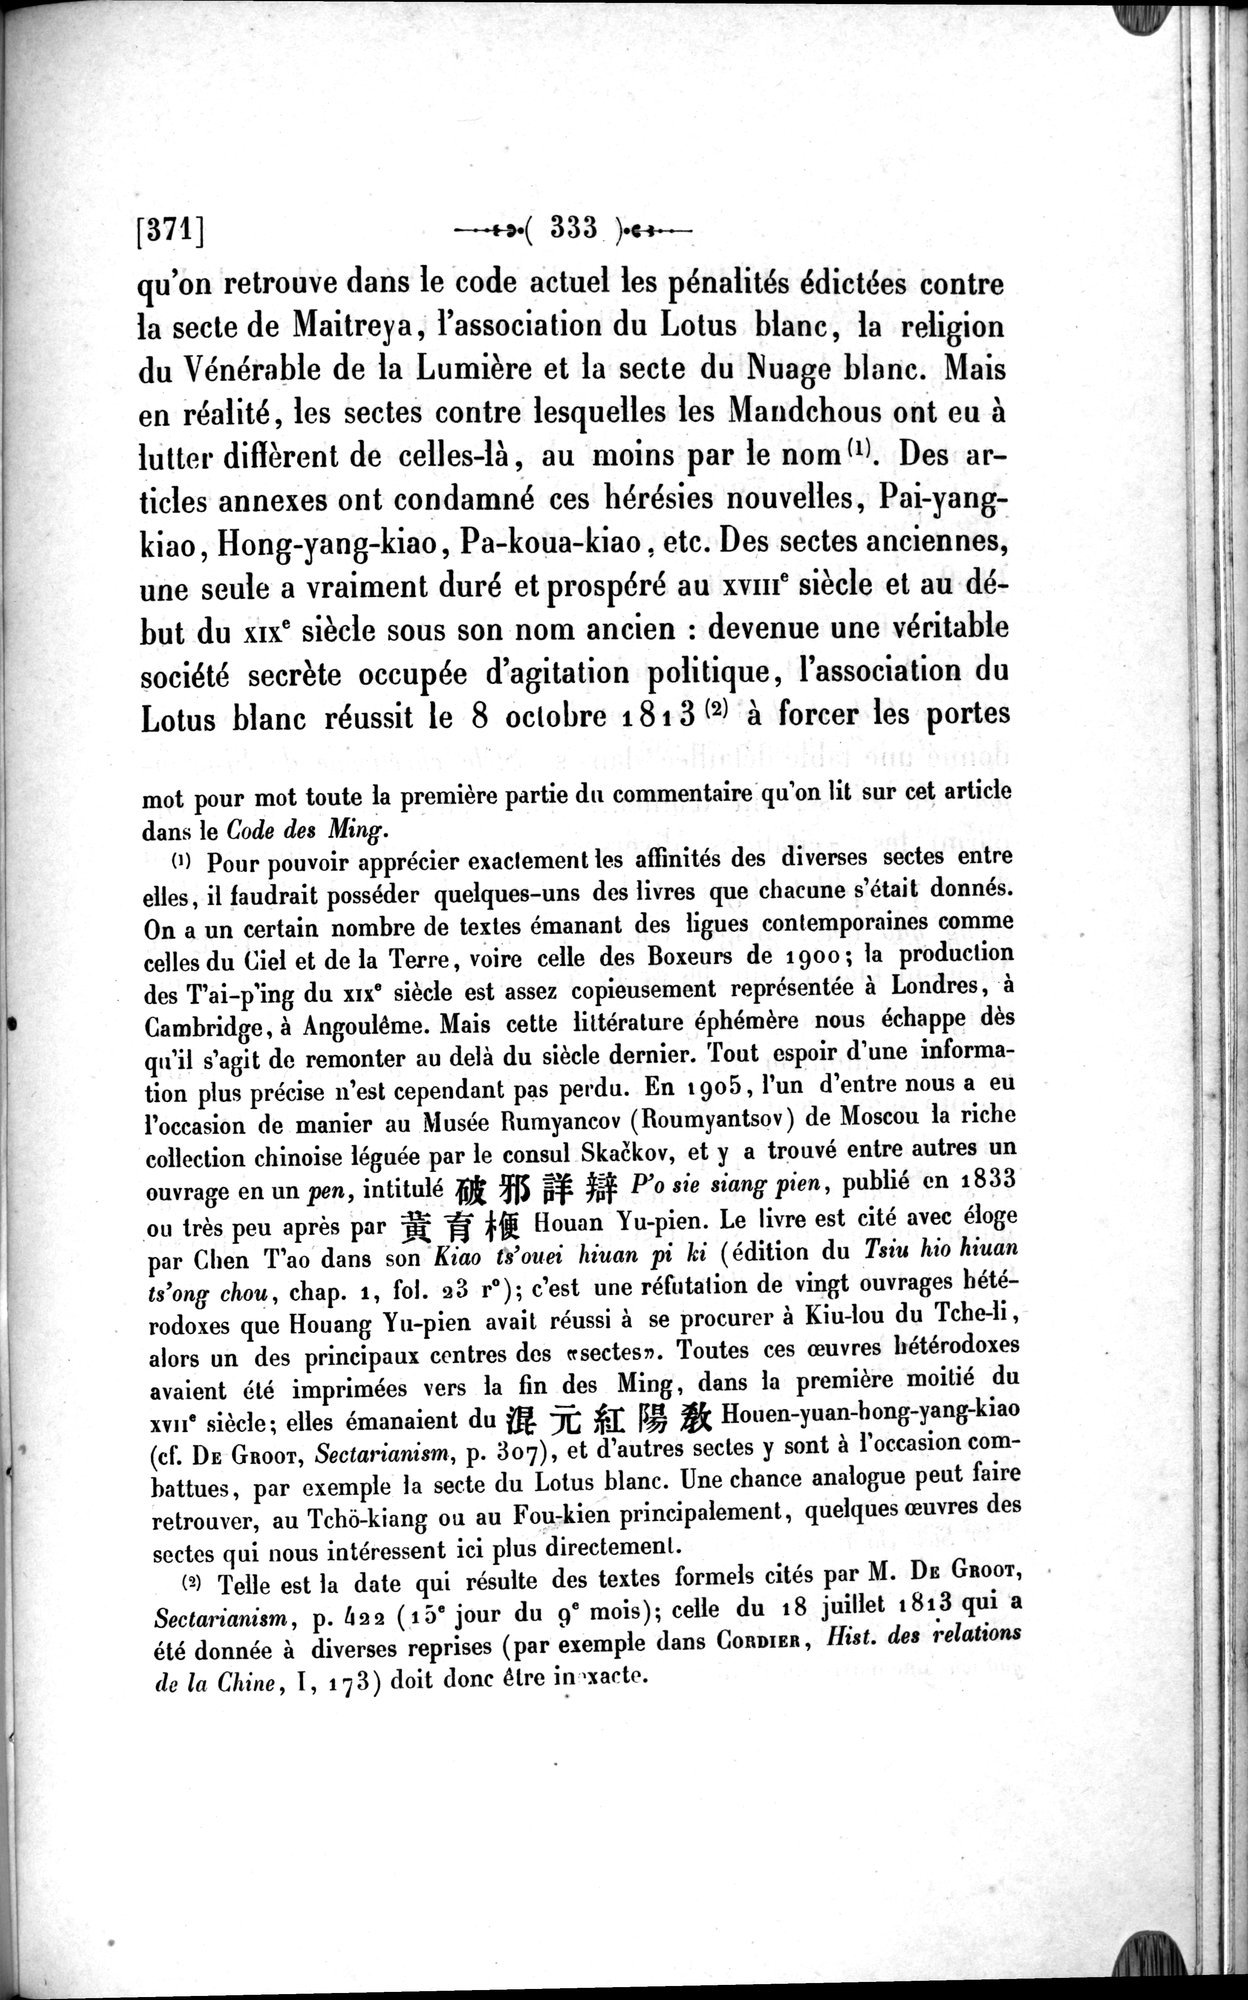 Un traité manichéen retrouvé en Chine : vol.1 / Page 343 (Grayscale High Resolution Image)